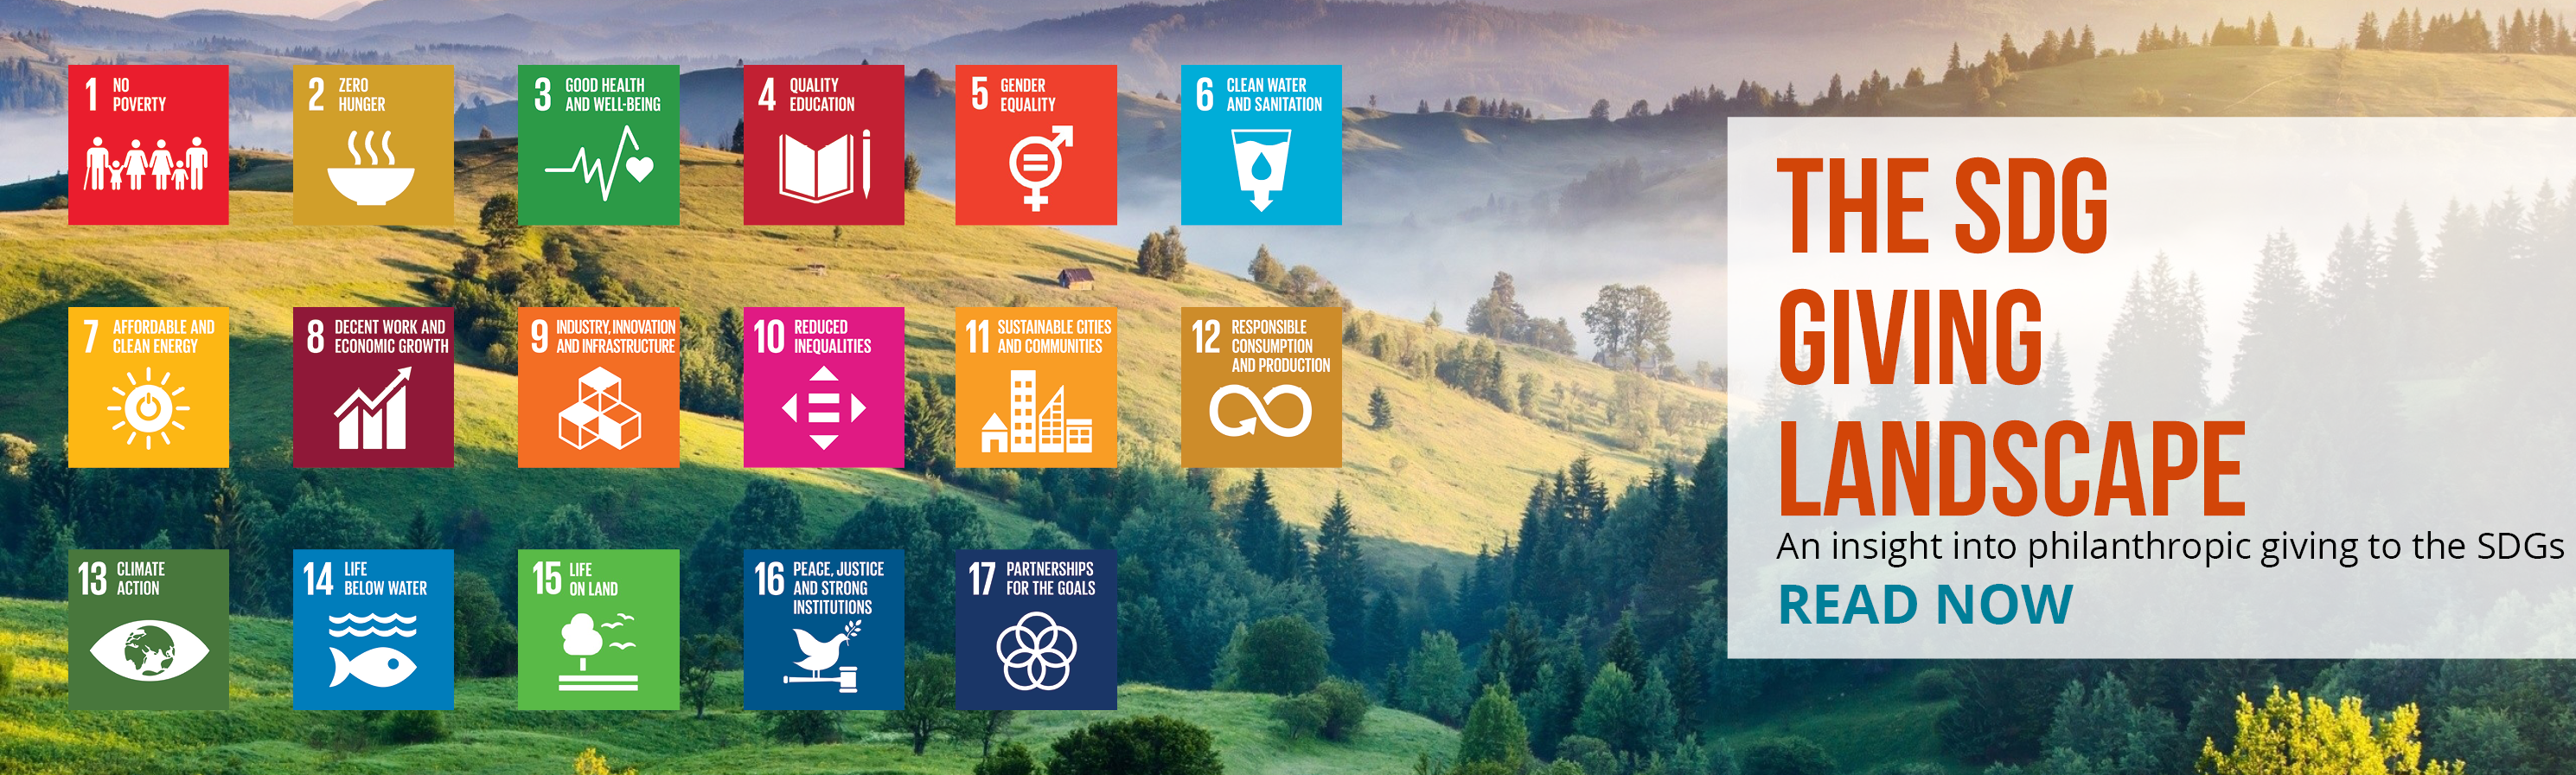 SDG giving landscape 3D banner